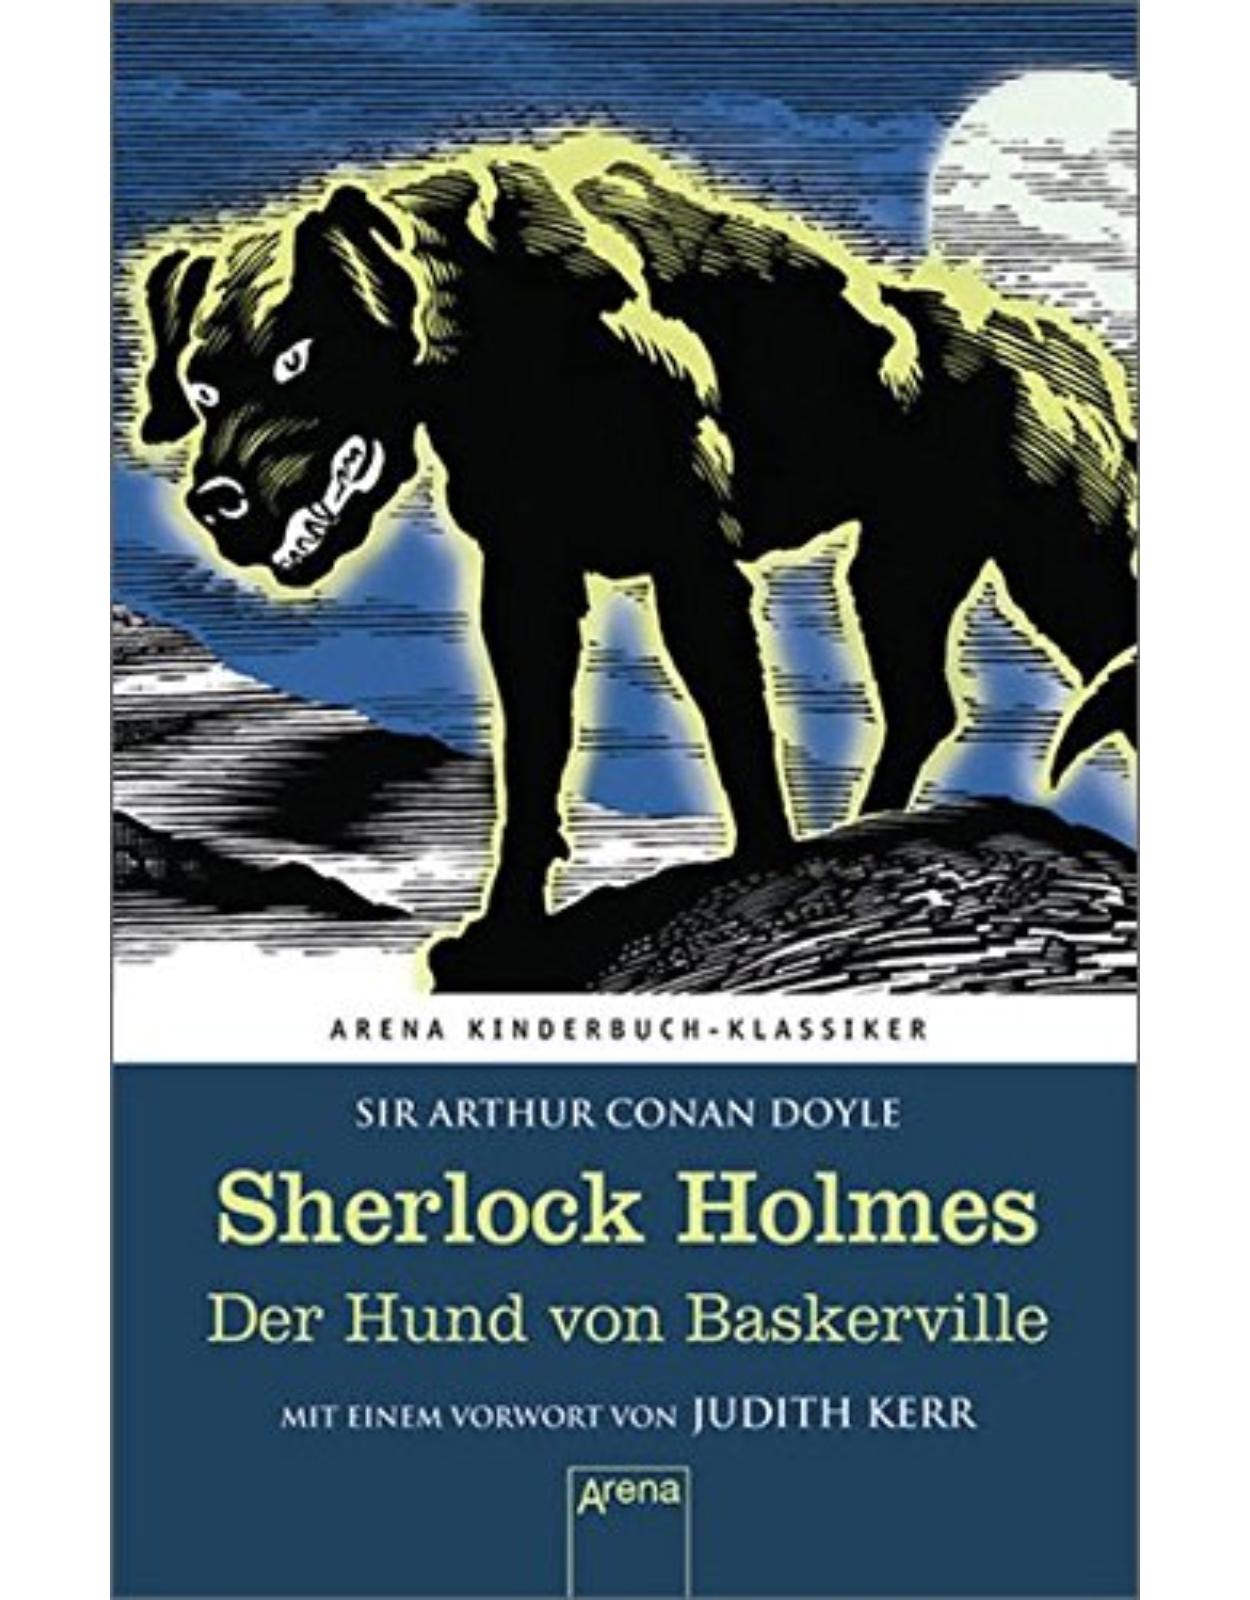 Sherlock Holmes. Der Hund von Baskerville: Arena Kinderbuch-Klassiker